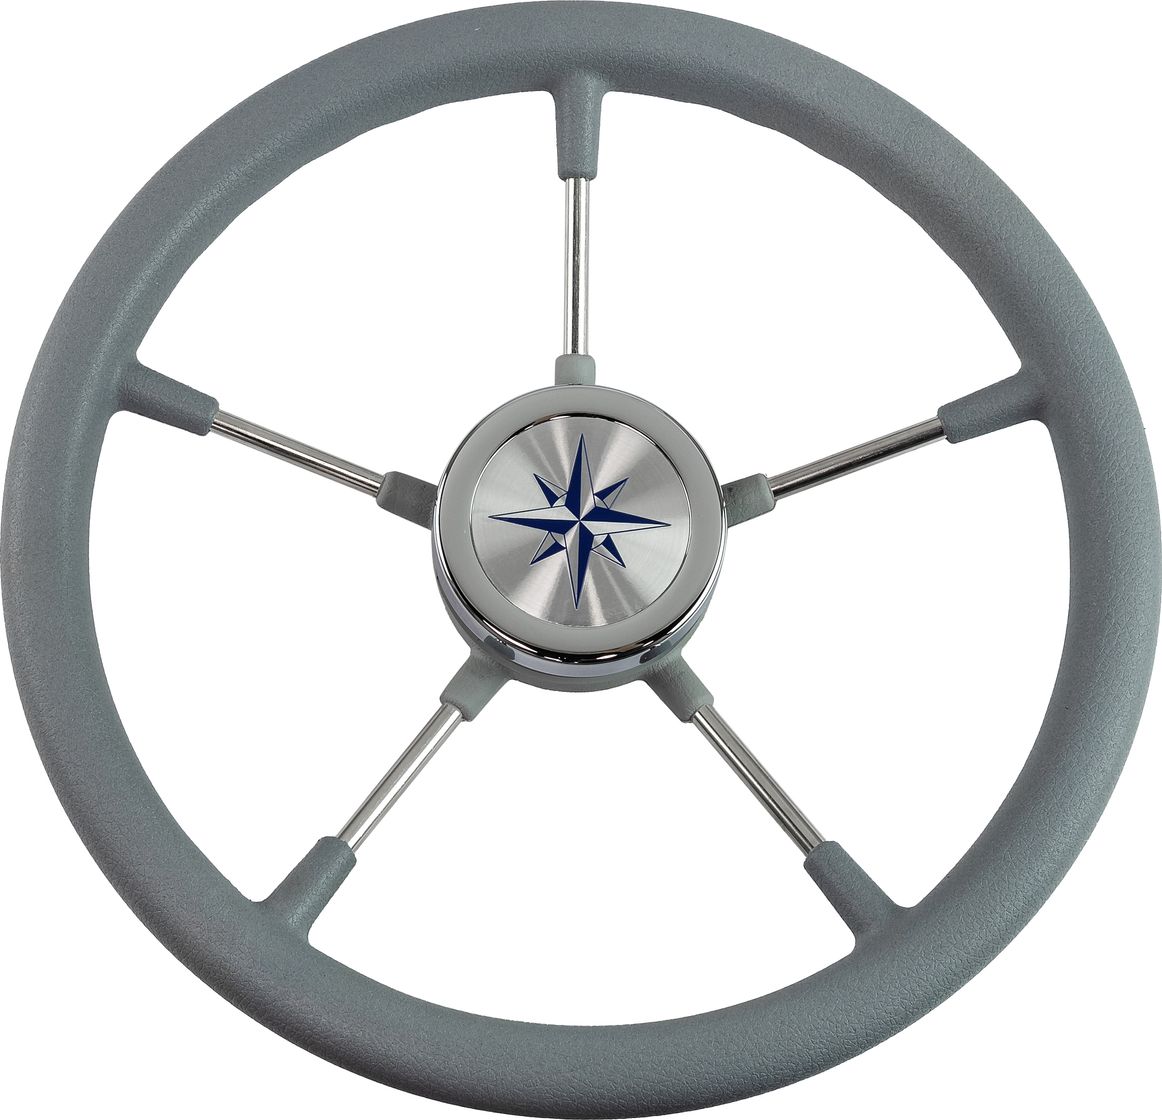 Рулевое колесо RIVA RSL обод серый, спицы серебряные д. 360 мм VN735022-03 рулевое колесо riva rsl обод белый спицы серебряные д 360 мм vn735022 08